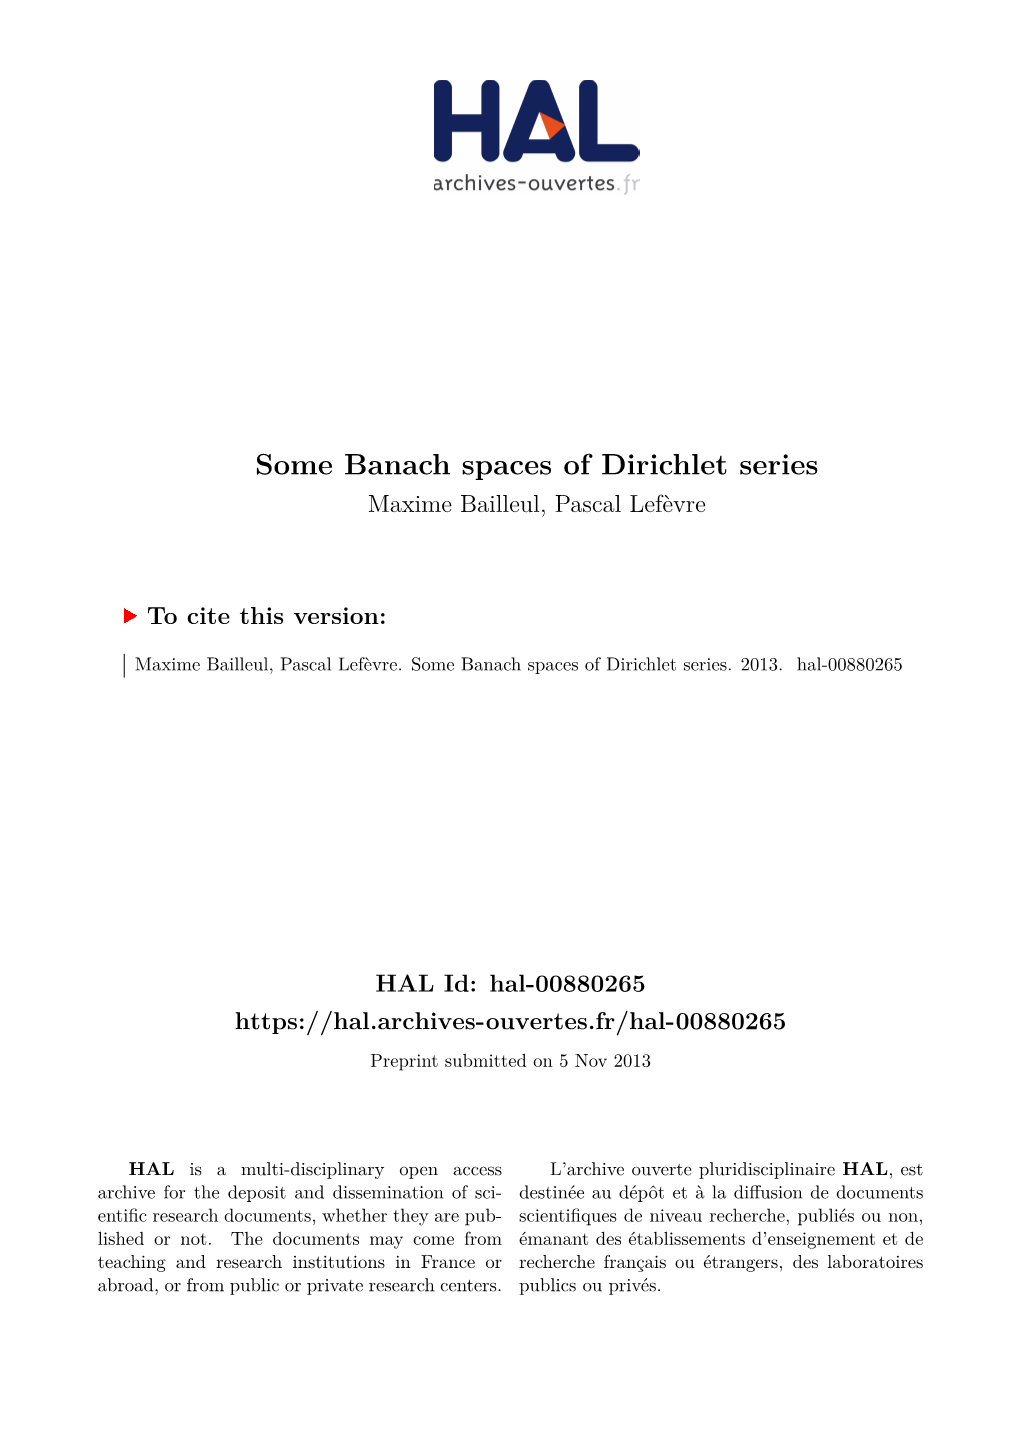 Some Banach Spaces of Dirichlet Series Maxime Bailleul, Pascal Lefèvre